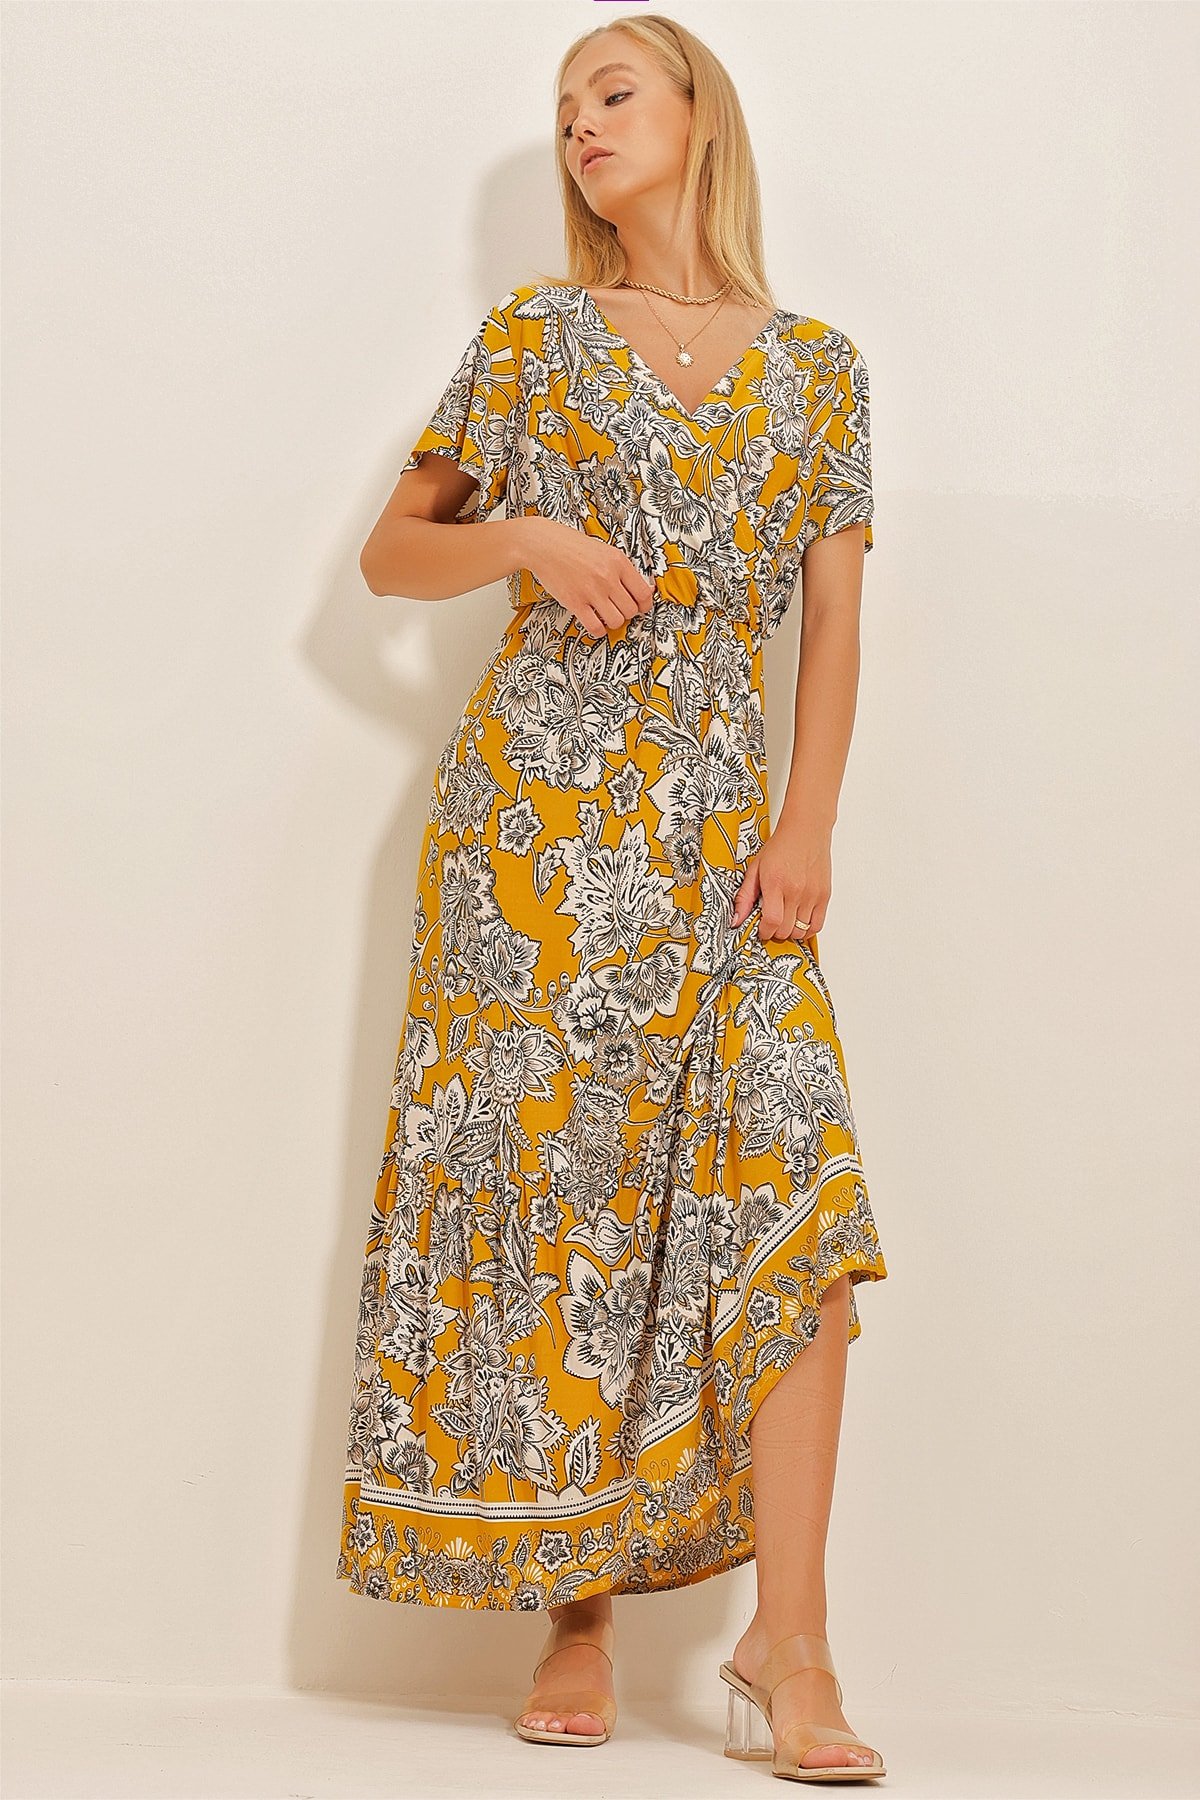 Trend Alaçatı Stili Dámske Šafranové žlté Kvetinové vzorované dvojradové šaty maxi dĺžky